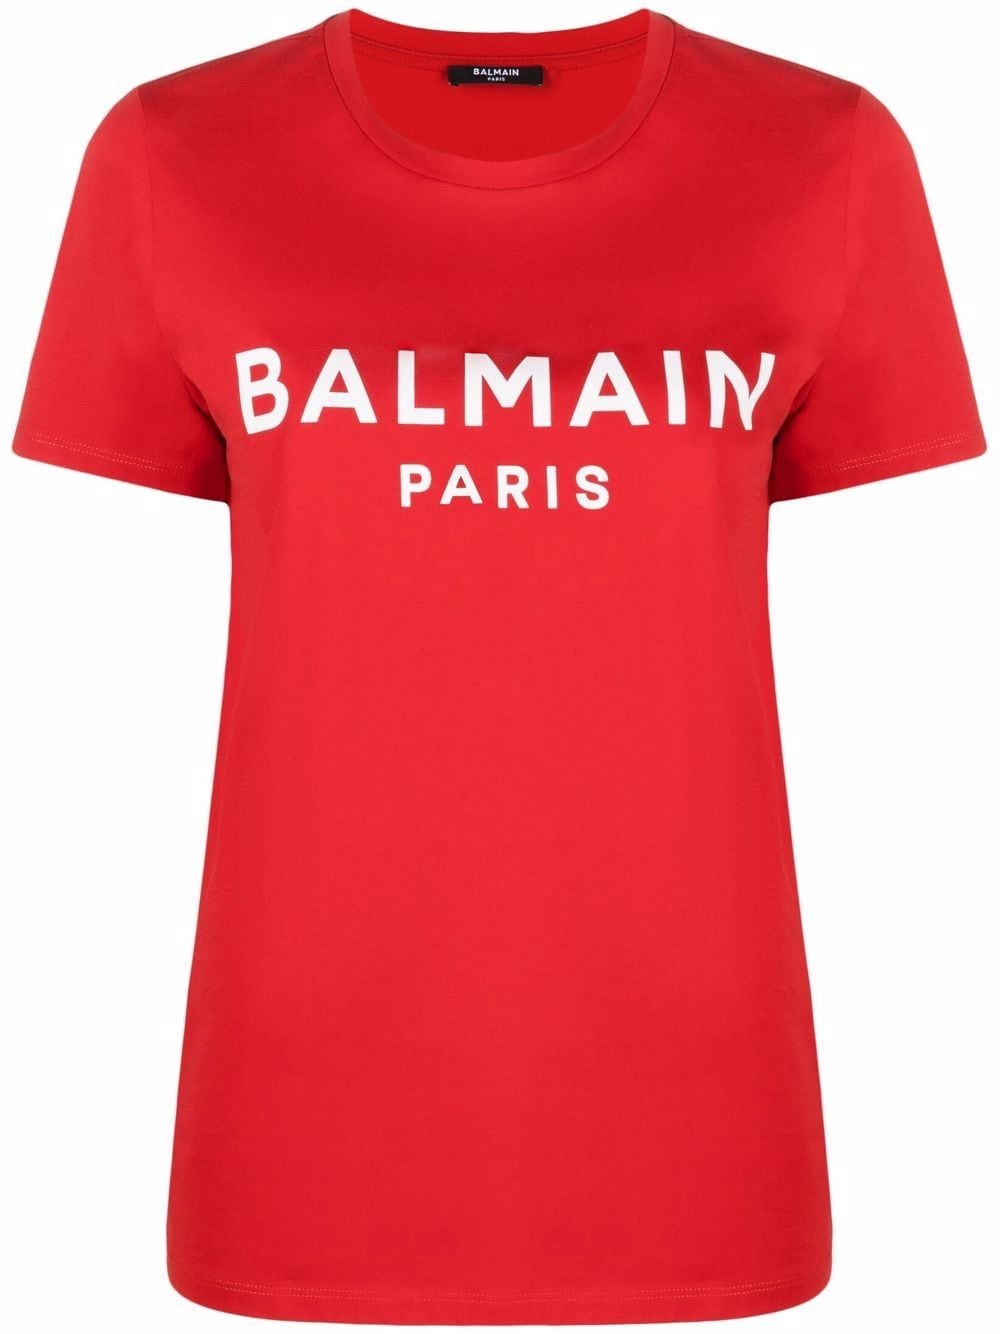 Balmain Logo t-shirt for Women - US ...